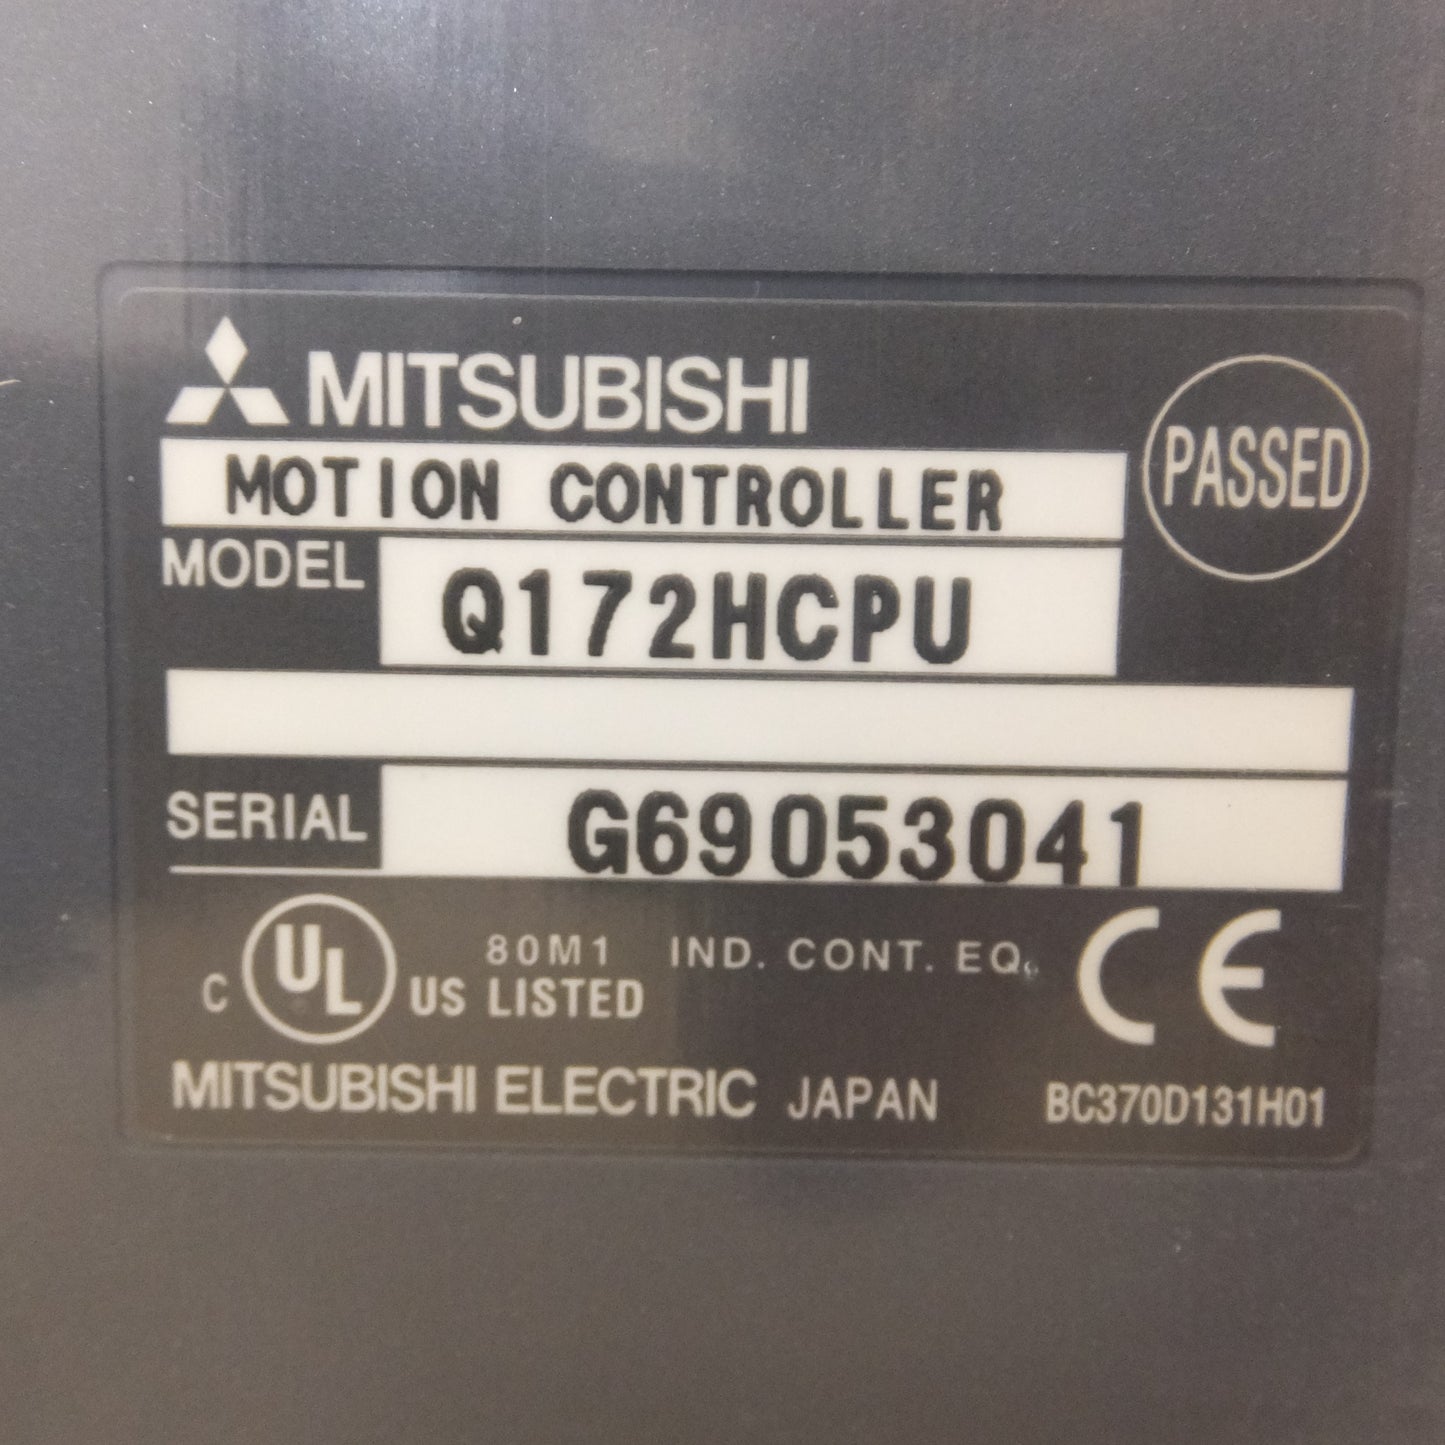 [送料無料] 未使用★三菱電機 MITSUBISHI シーケンサ MELSEC-Q Q172HCPU(2)★